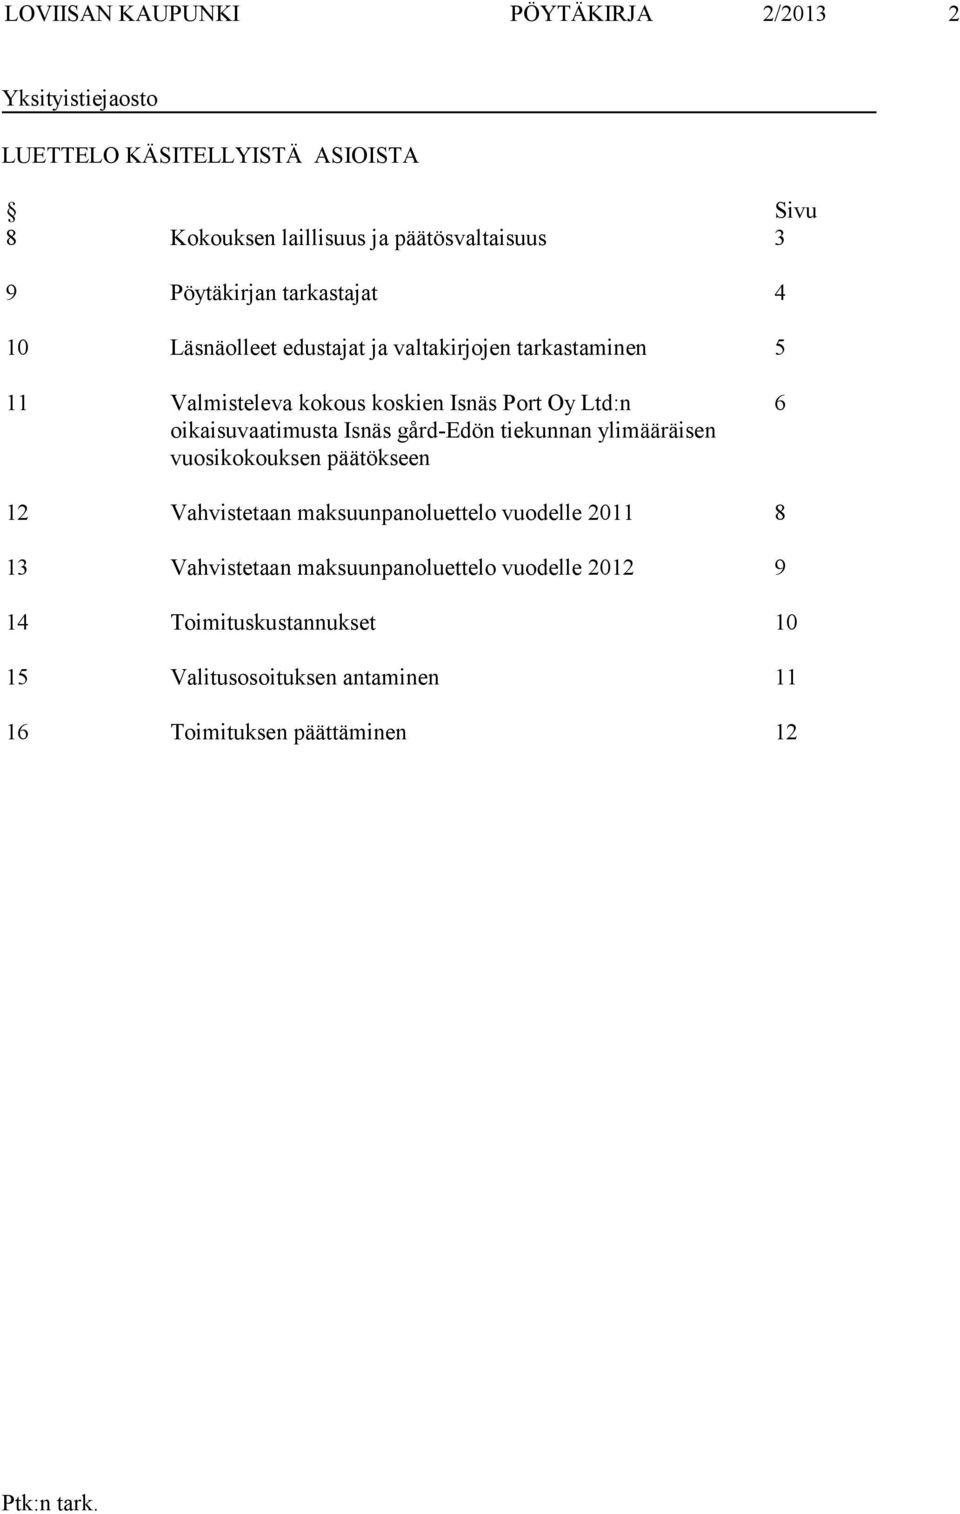 oikaisuvaatimusta Isnäs gård-edön tiekunnan ylimääräisen vuosikokouksen päätökseen 6 12 Vahvistetaan maksuunpanoluettelo vuodelle 2011 8